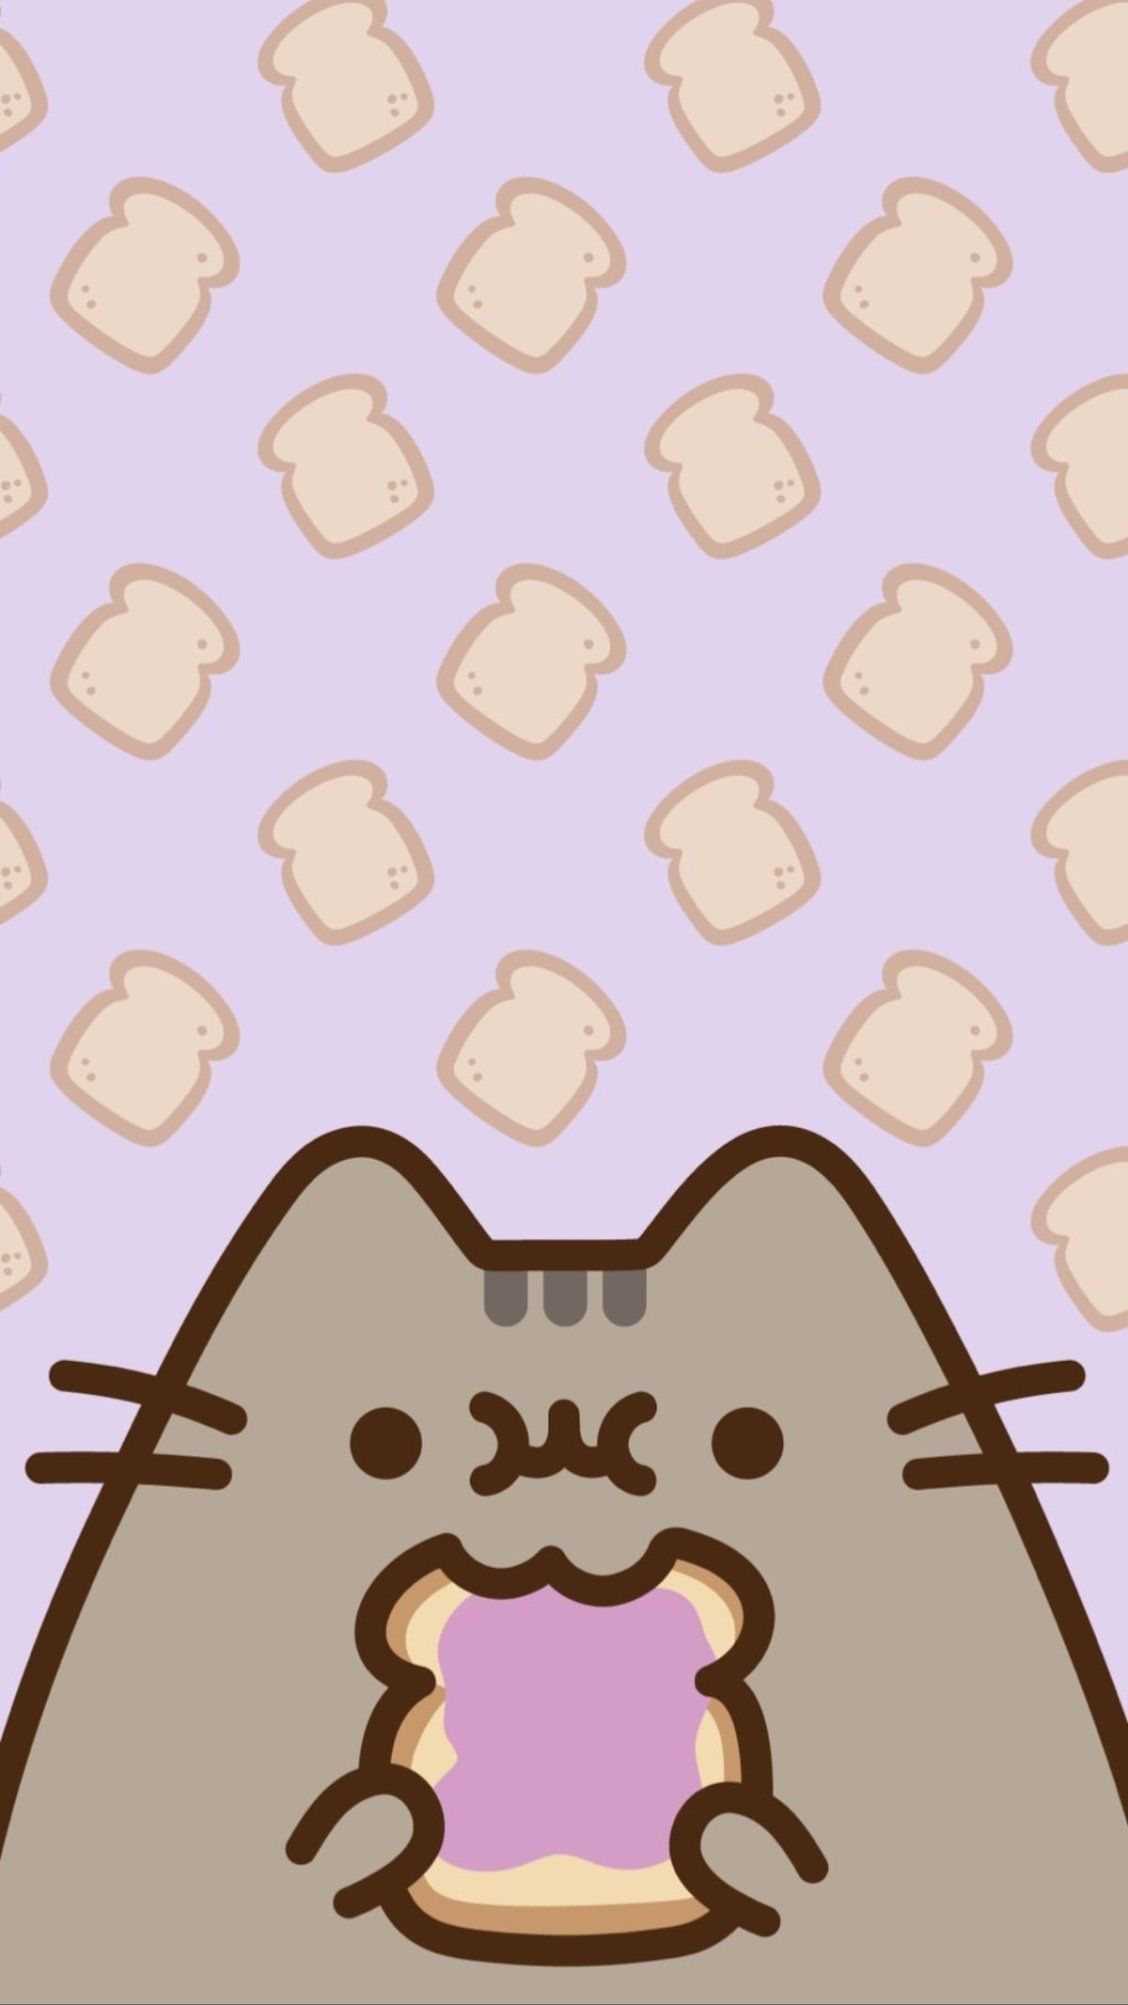 TALL TOAST. Pusheen cute, Pusheen cat, Wallpaper iphone cute